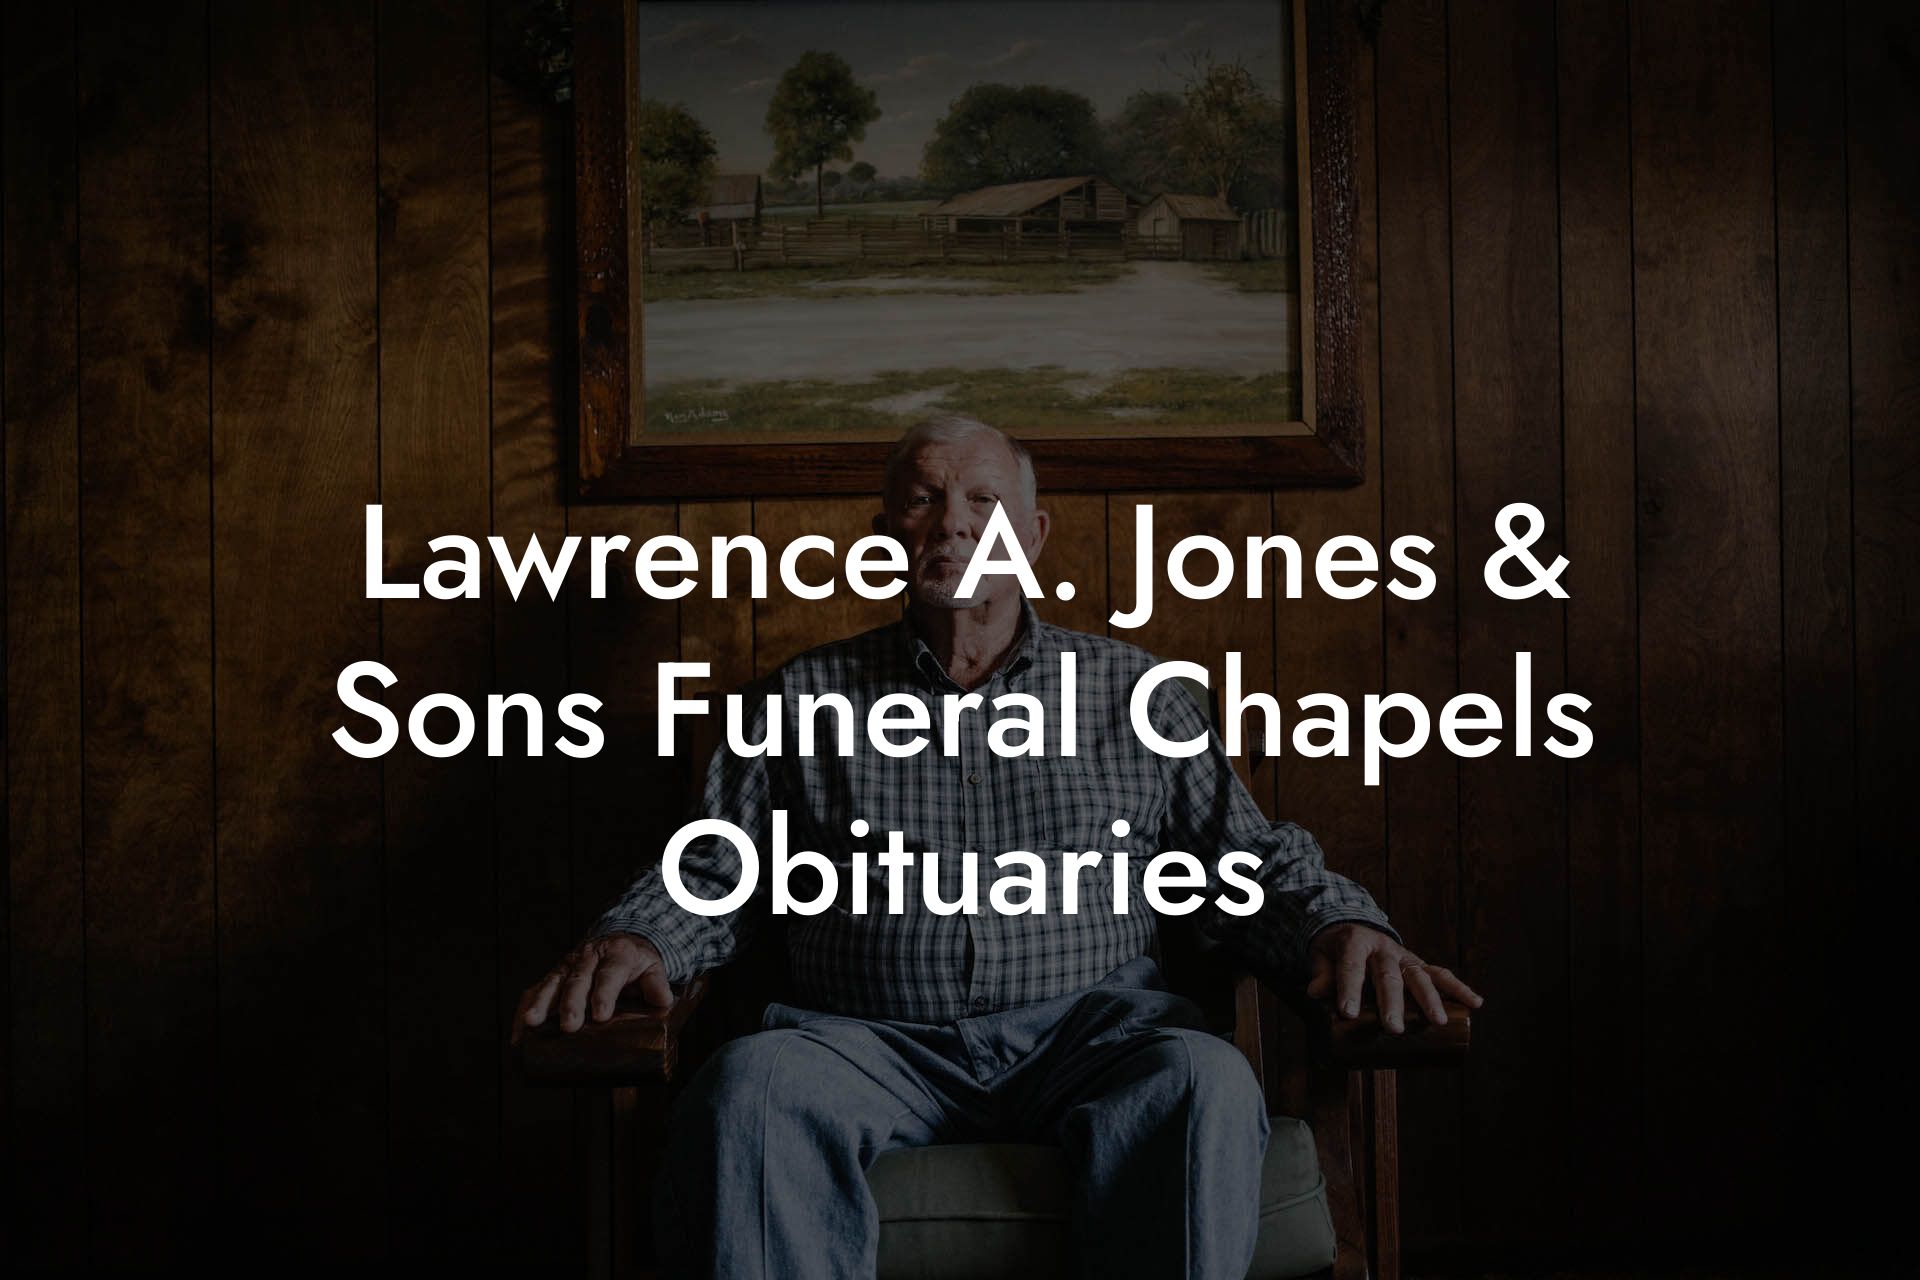 Lawrence A. Jones & Sons Funeral Chapels Obituaries